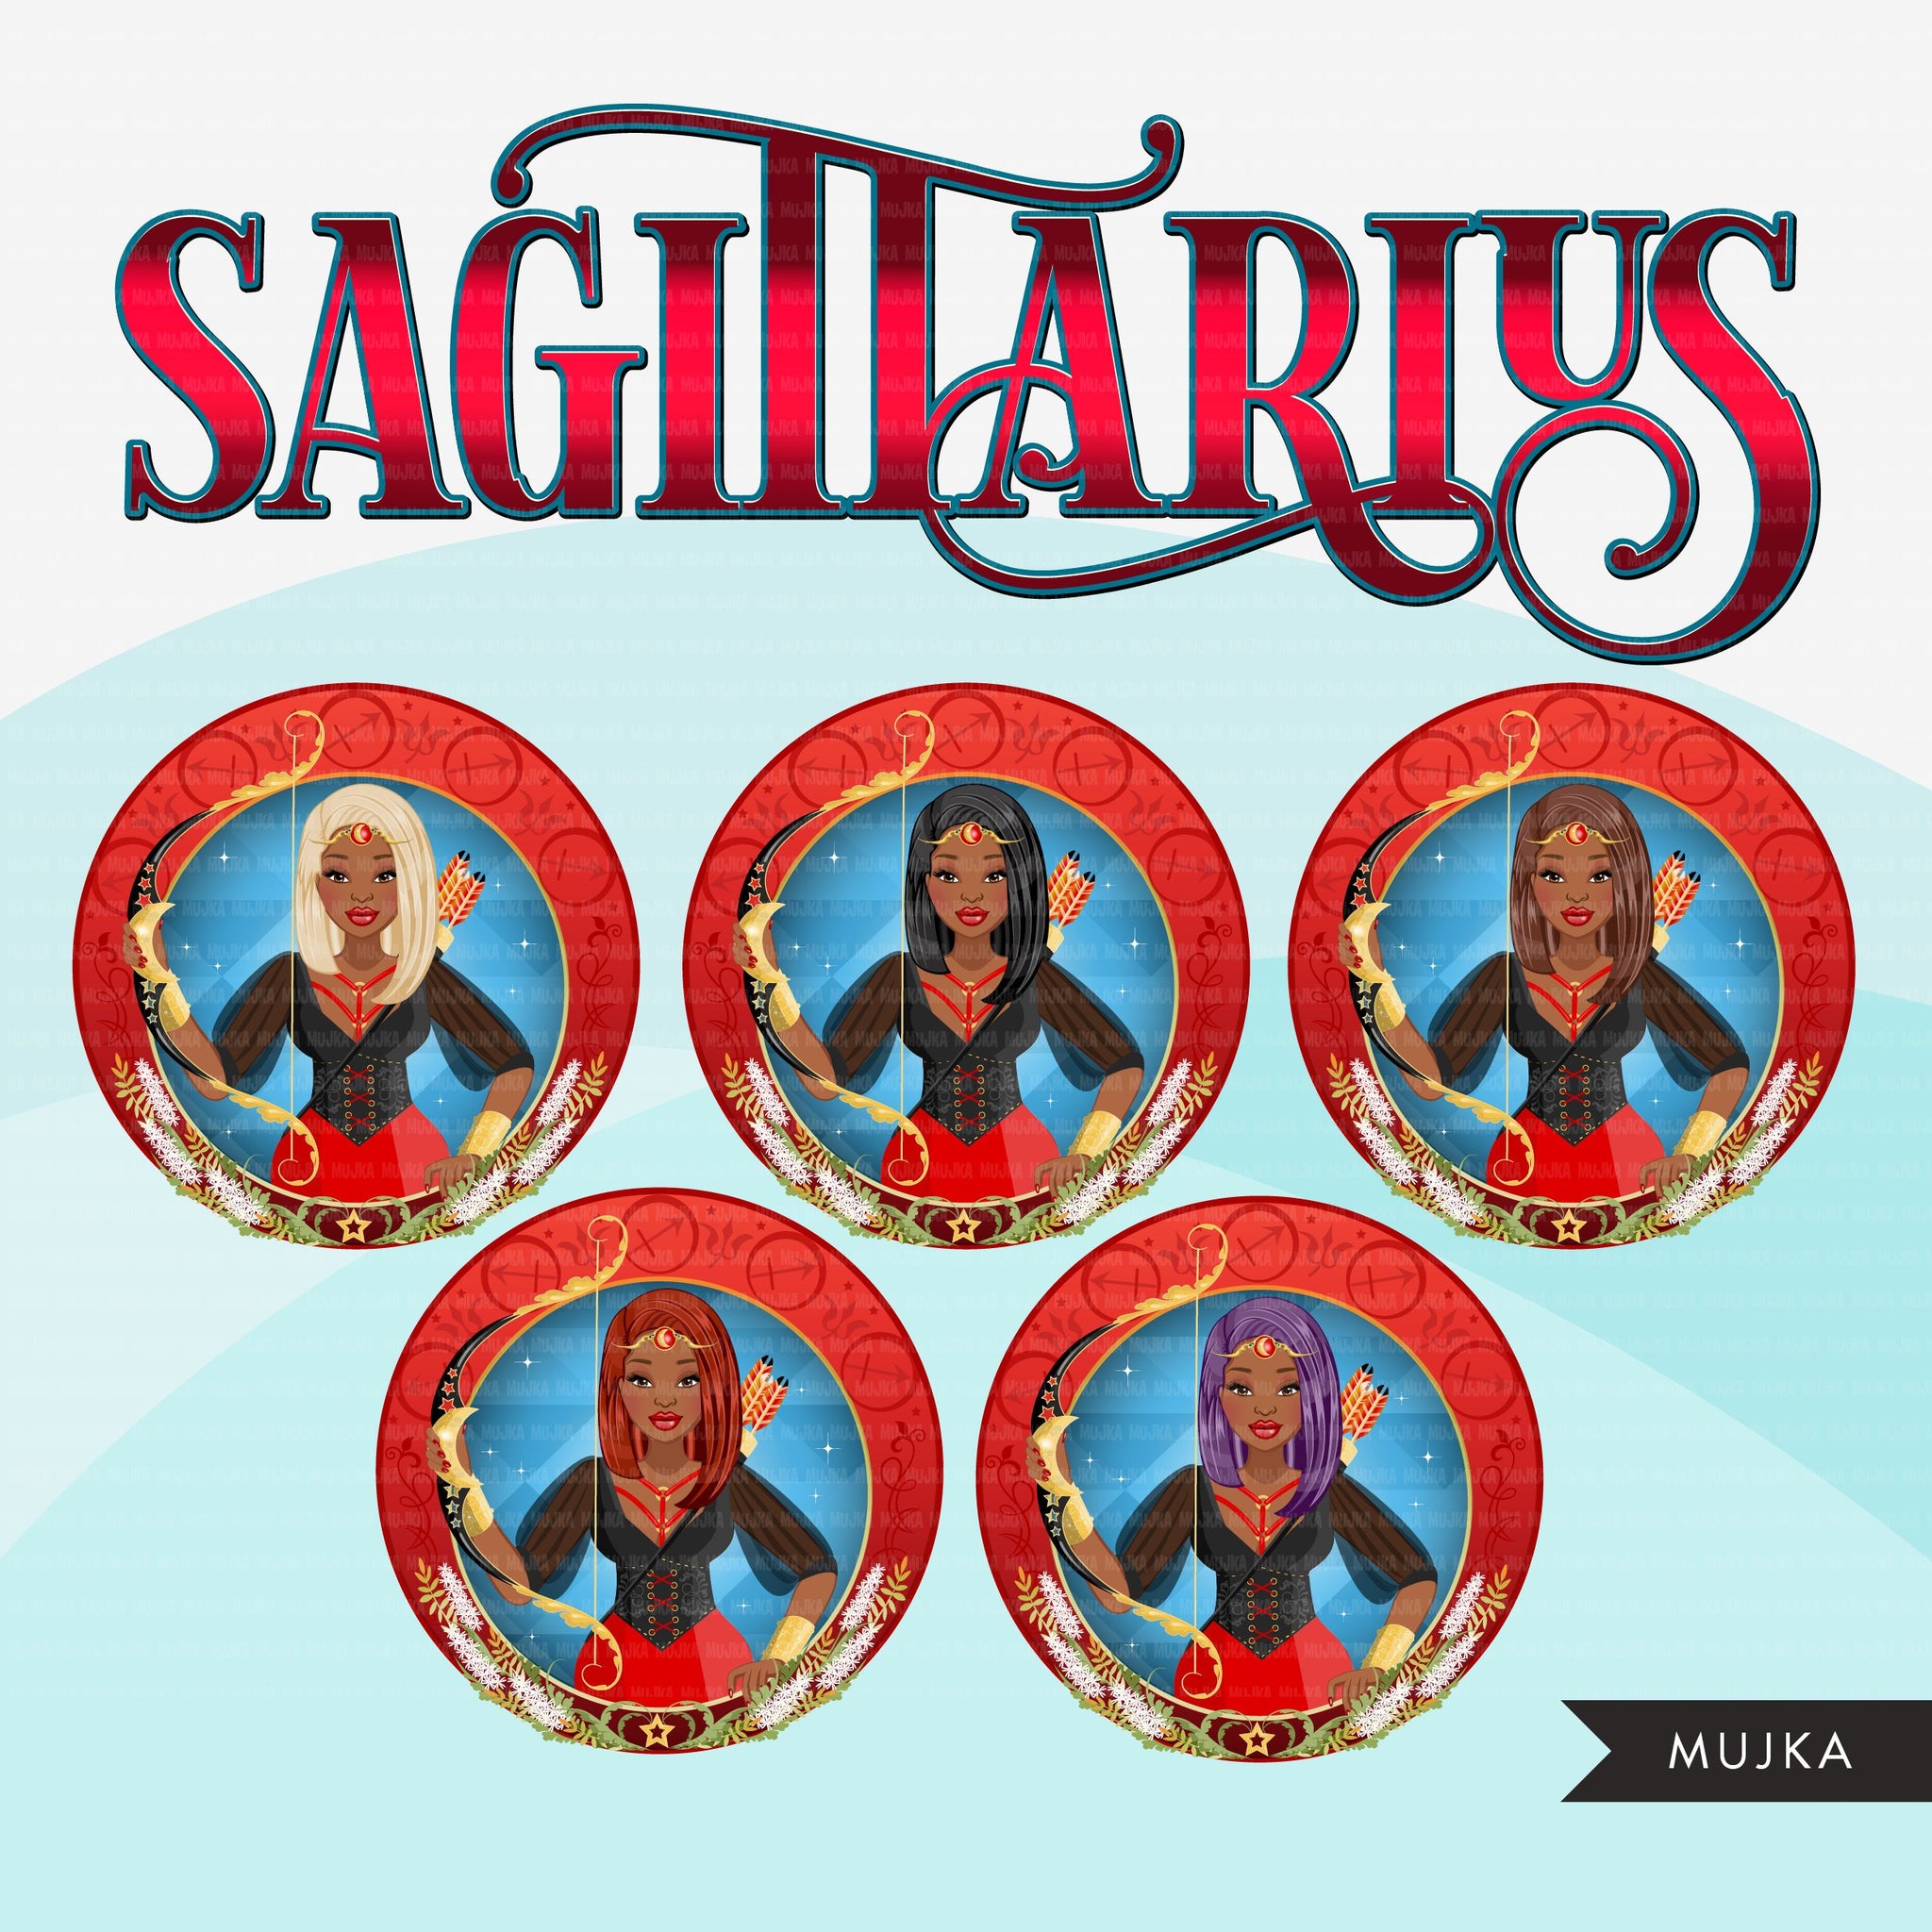 Clipart do Zodíaco Sagitário, download digital Png, gráficos de sublimação para Cricut e Cameo, cabelos lisos pretos com designs de signos do horóscopo feminino